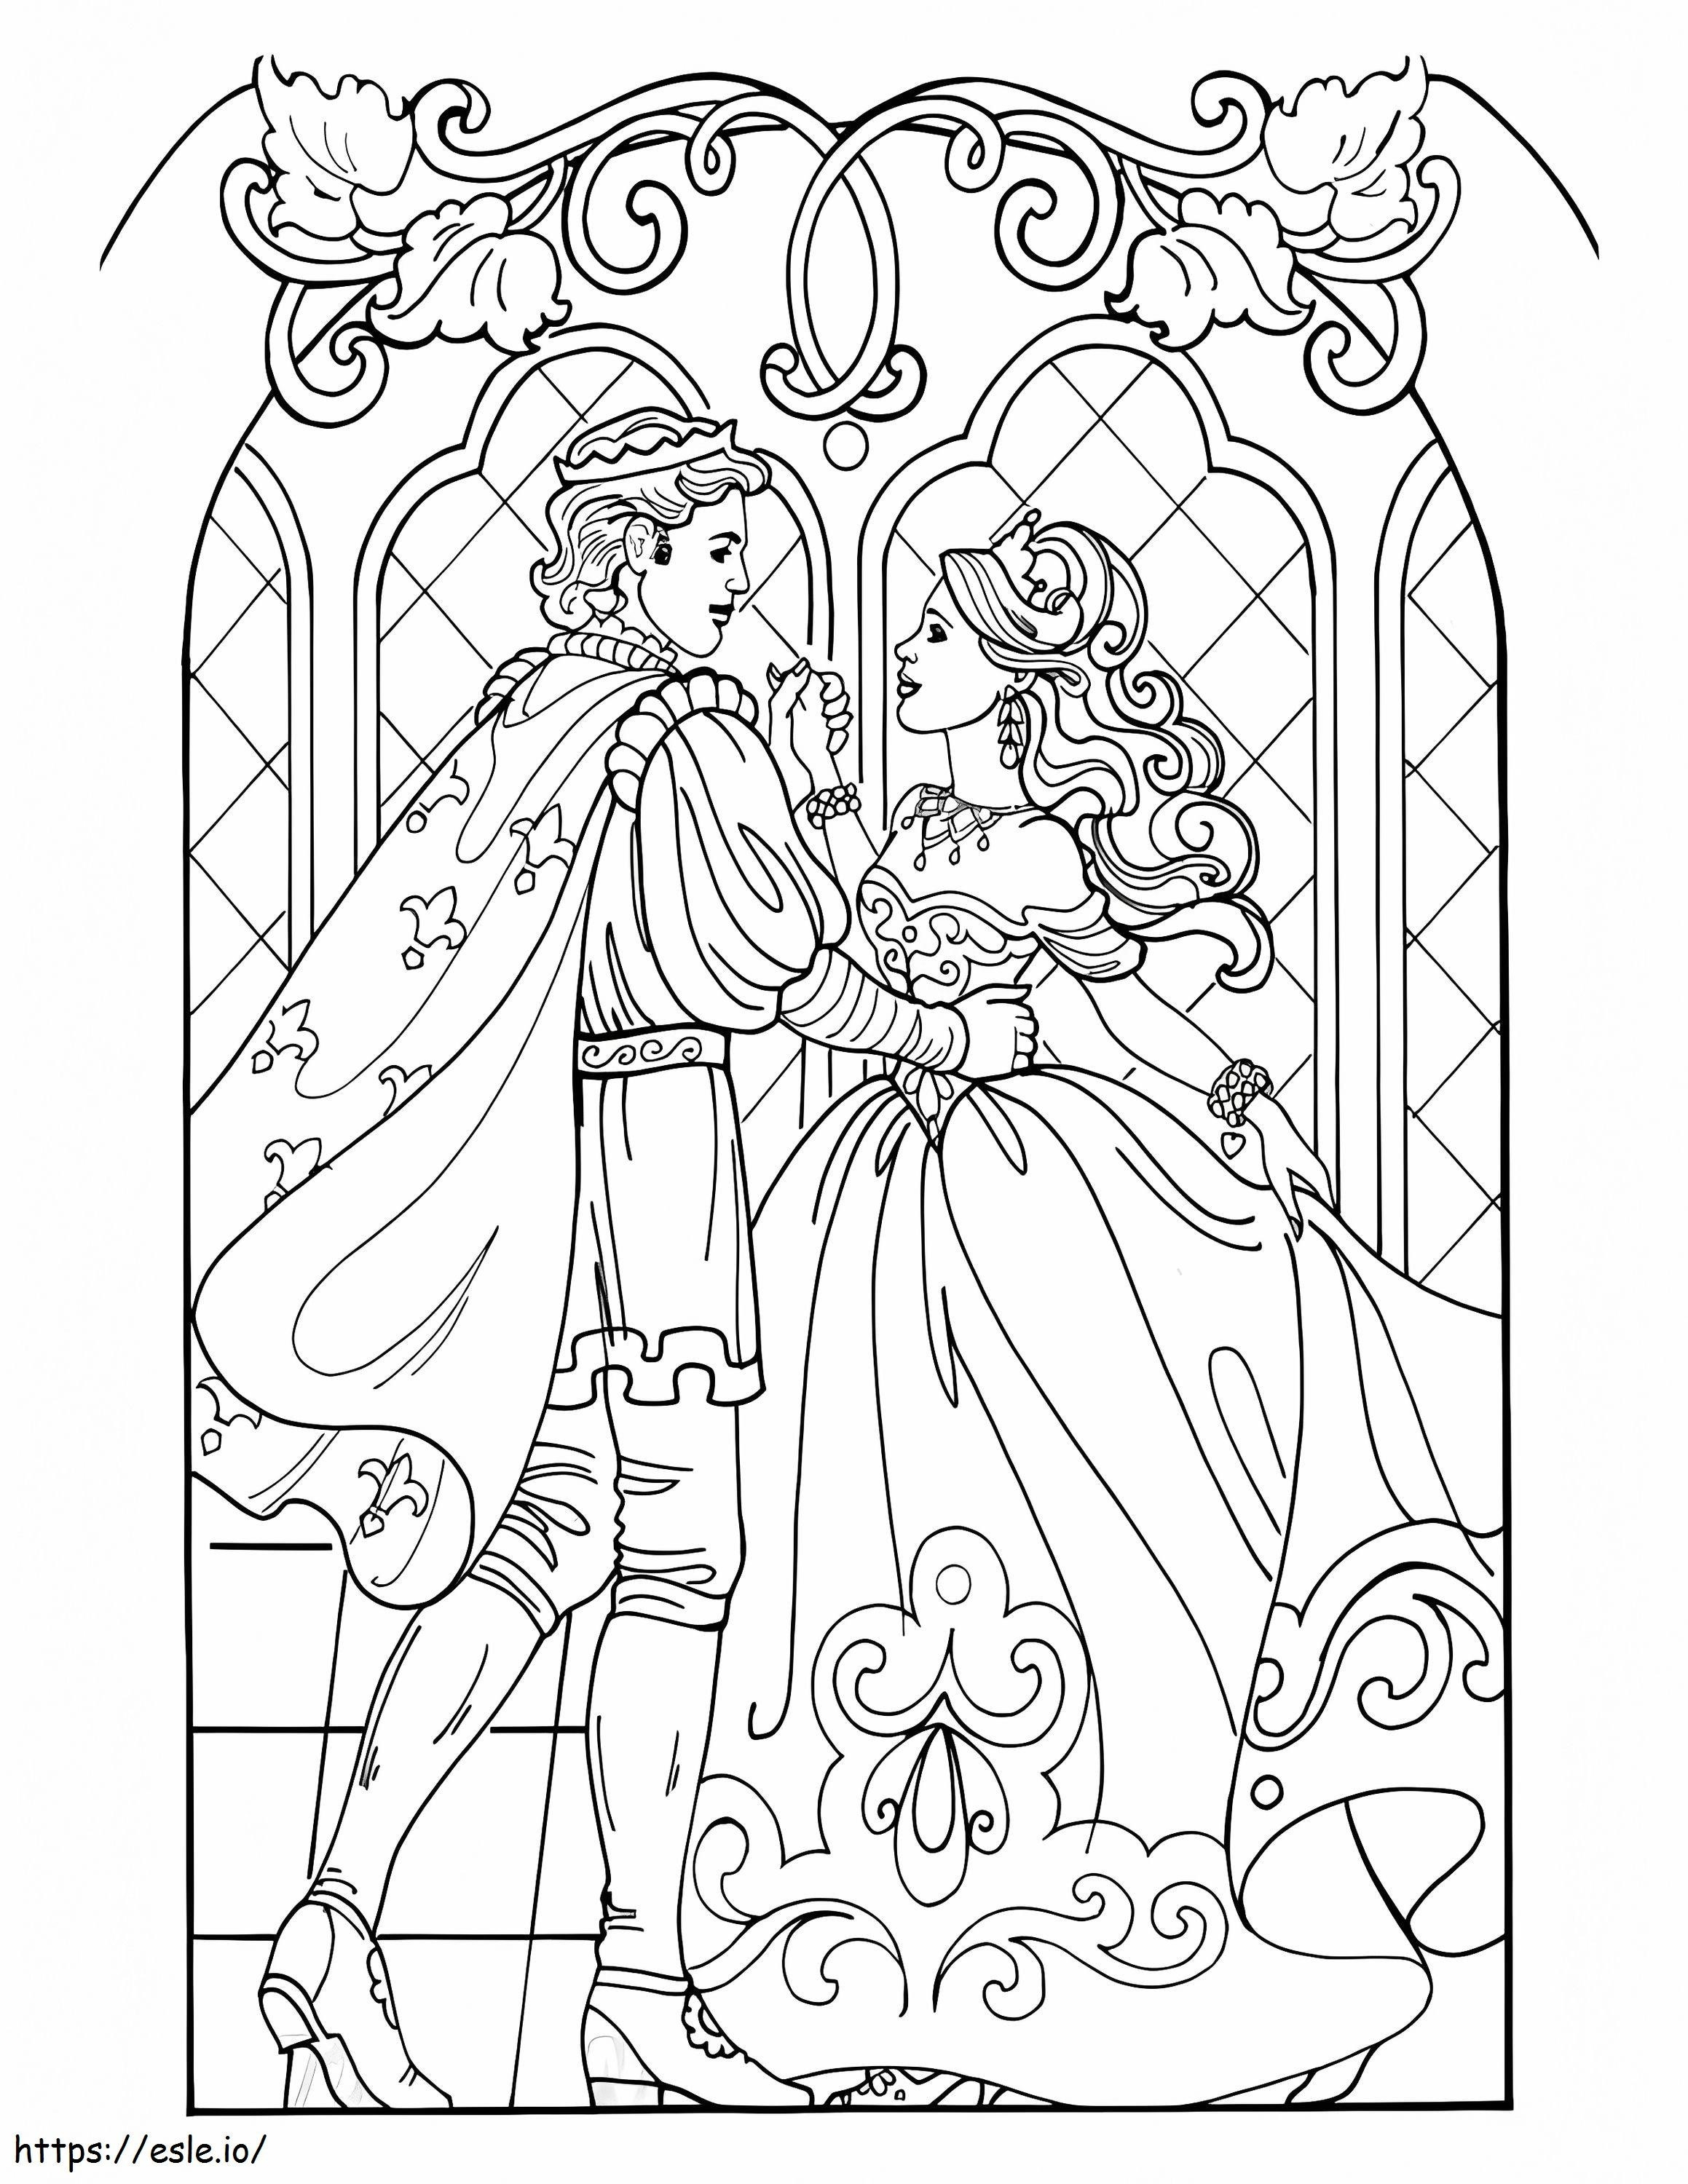 Prinzessin Leonora und Prinz ausmalbilder